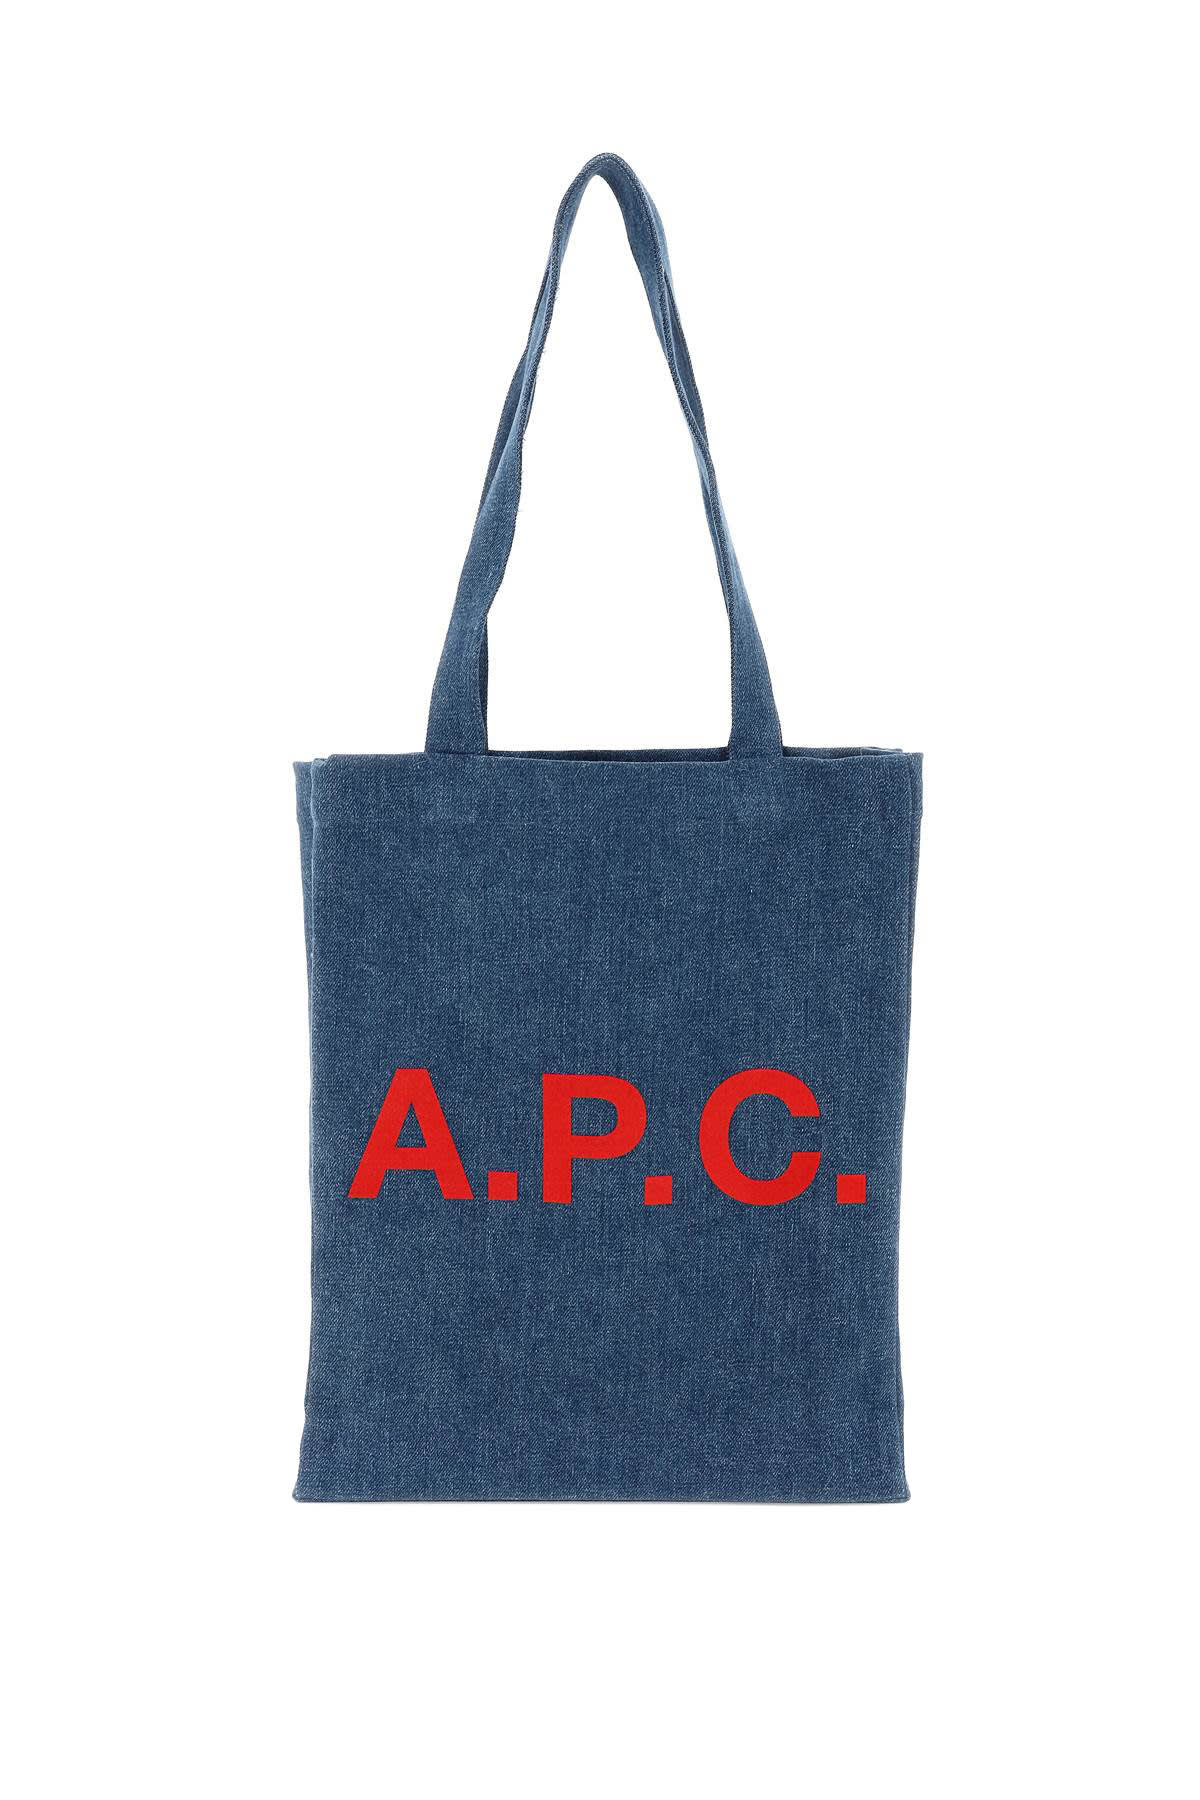 A.P.C. lou Denim Tote Bag